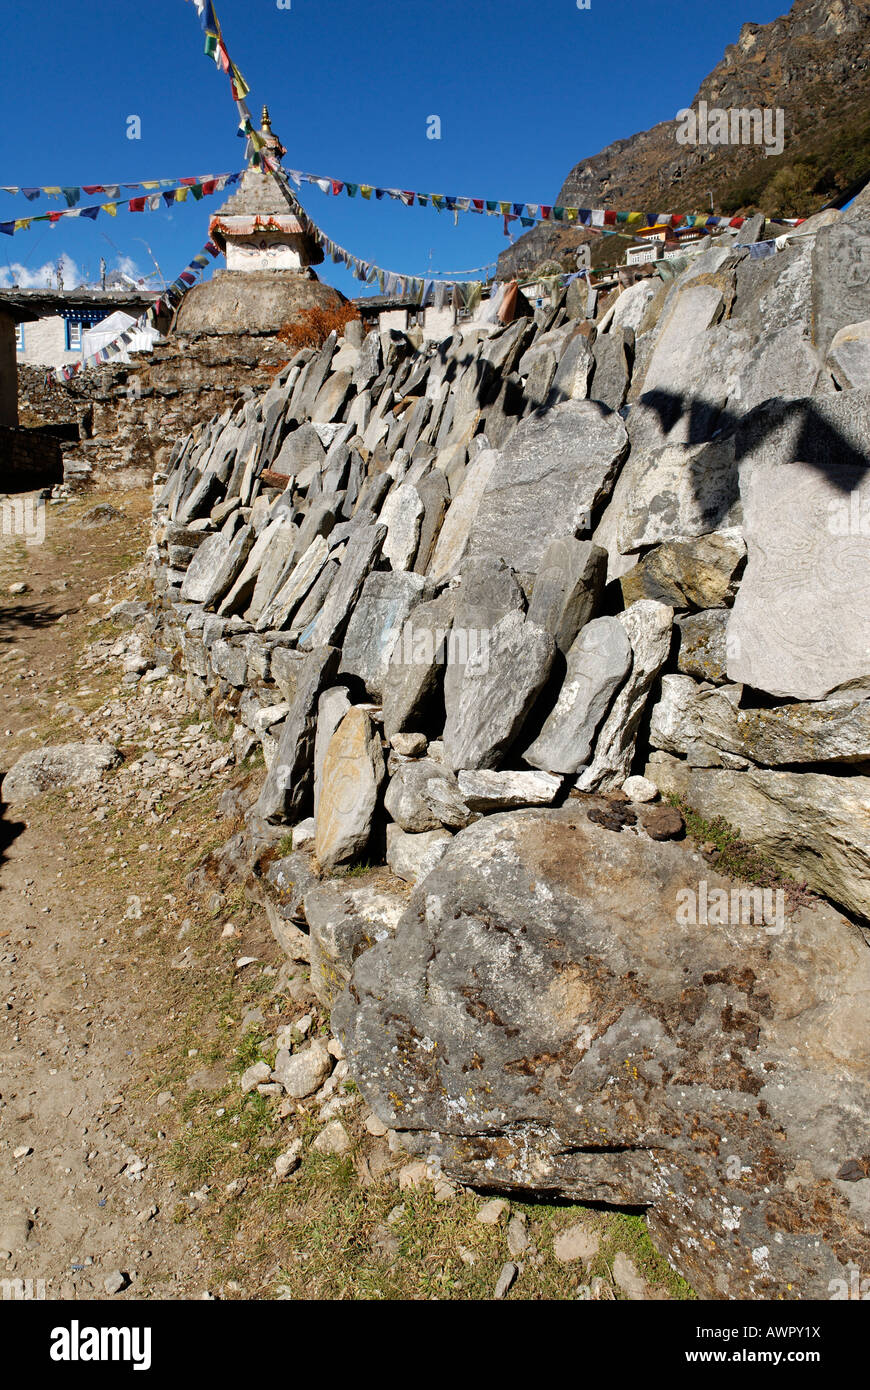 Mani wall at Thamo Sherpa village, Sagarmatha National Park, Khumbu Himal, Nepal Stock Photo